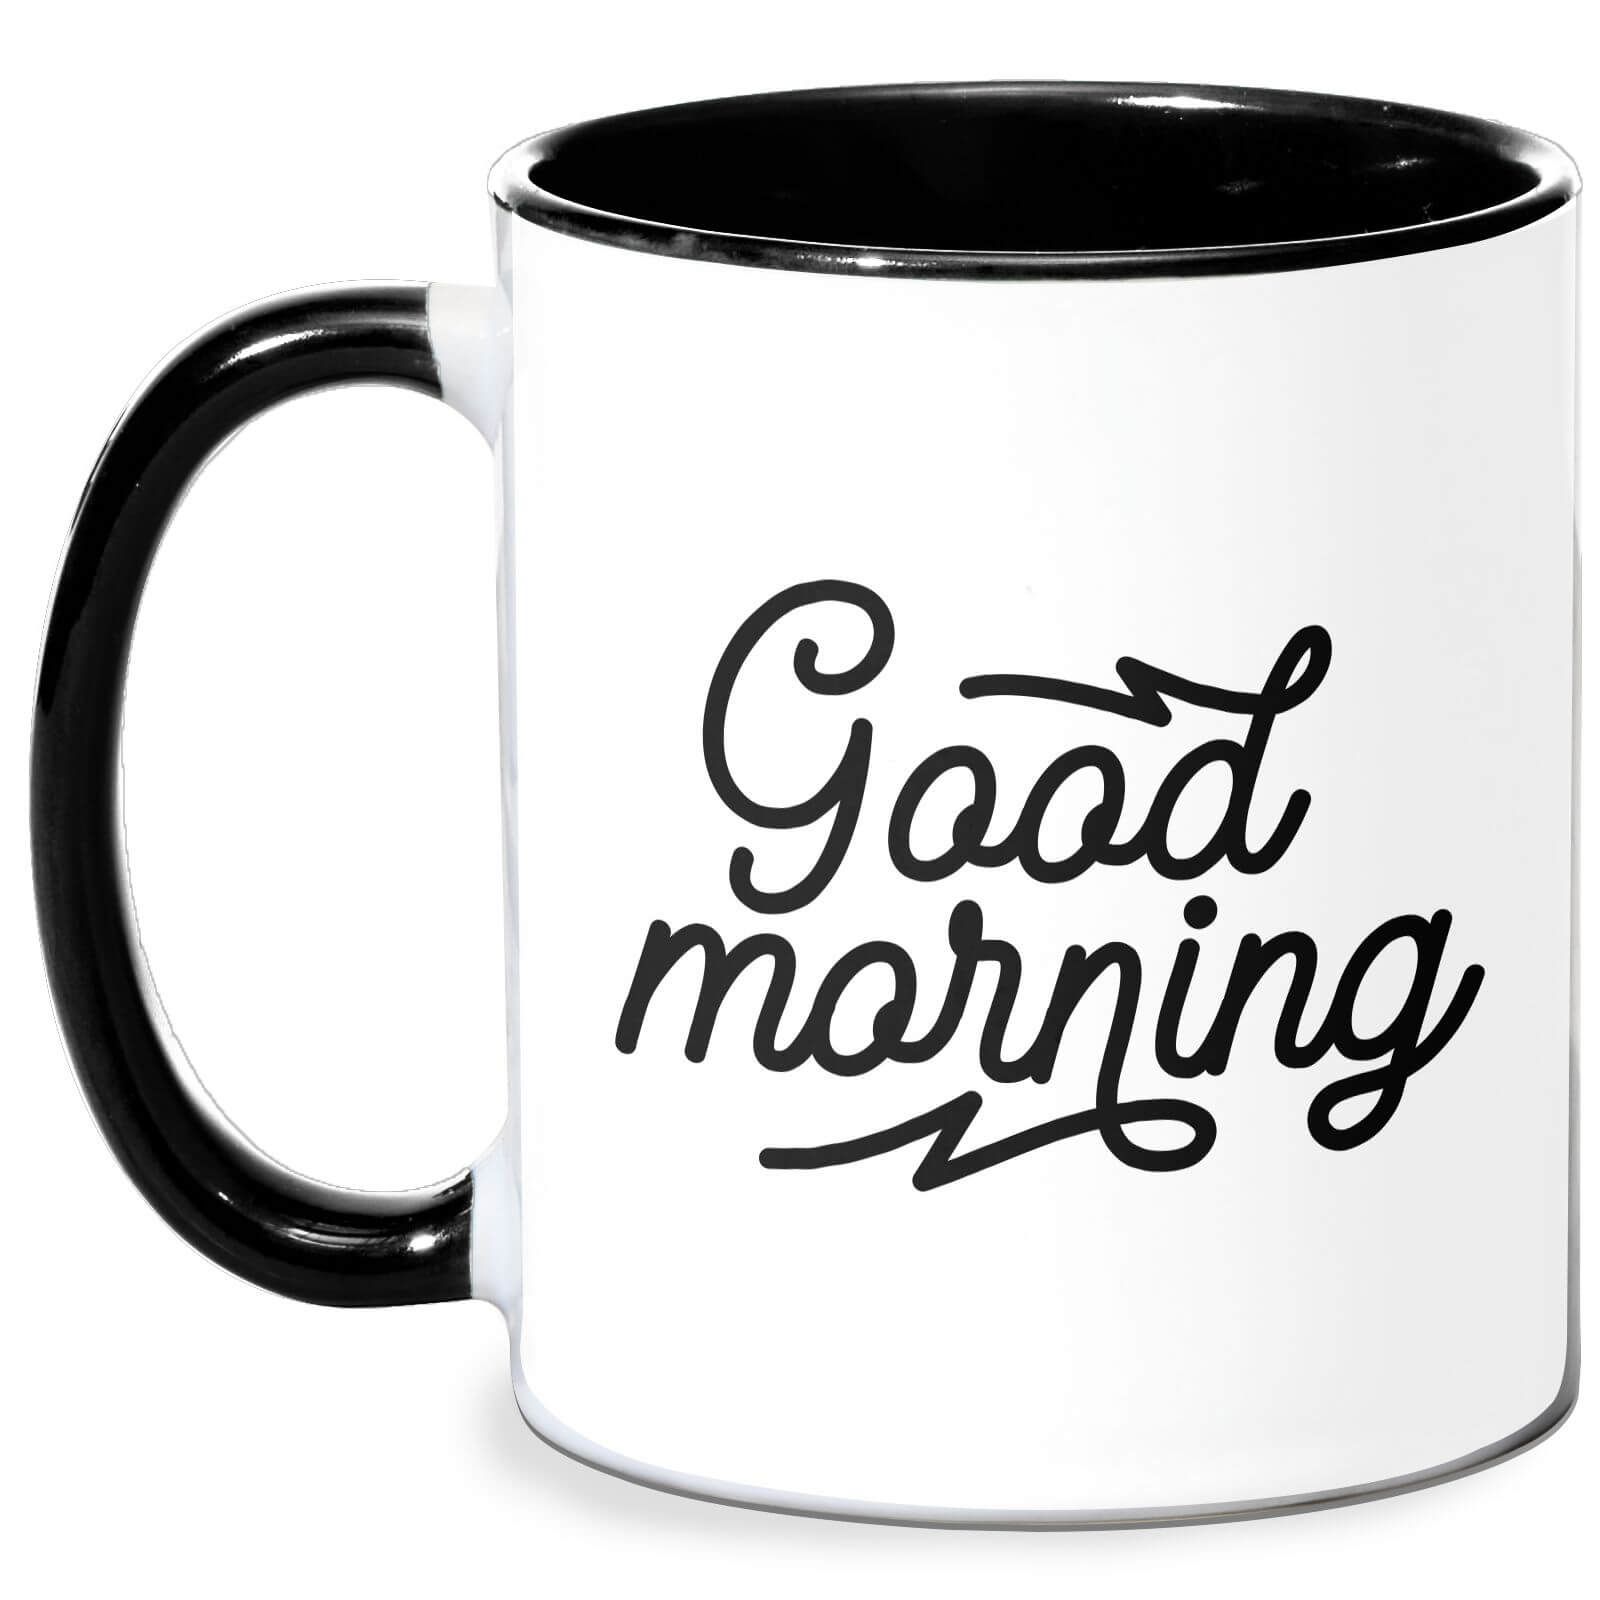 Good Morning Mug - White/Black